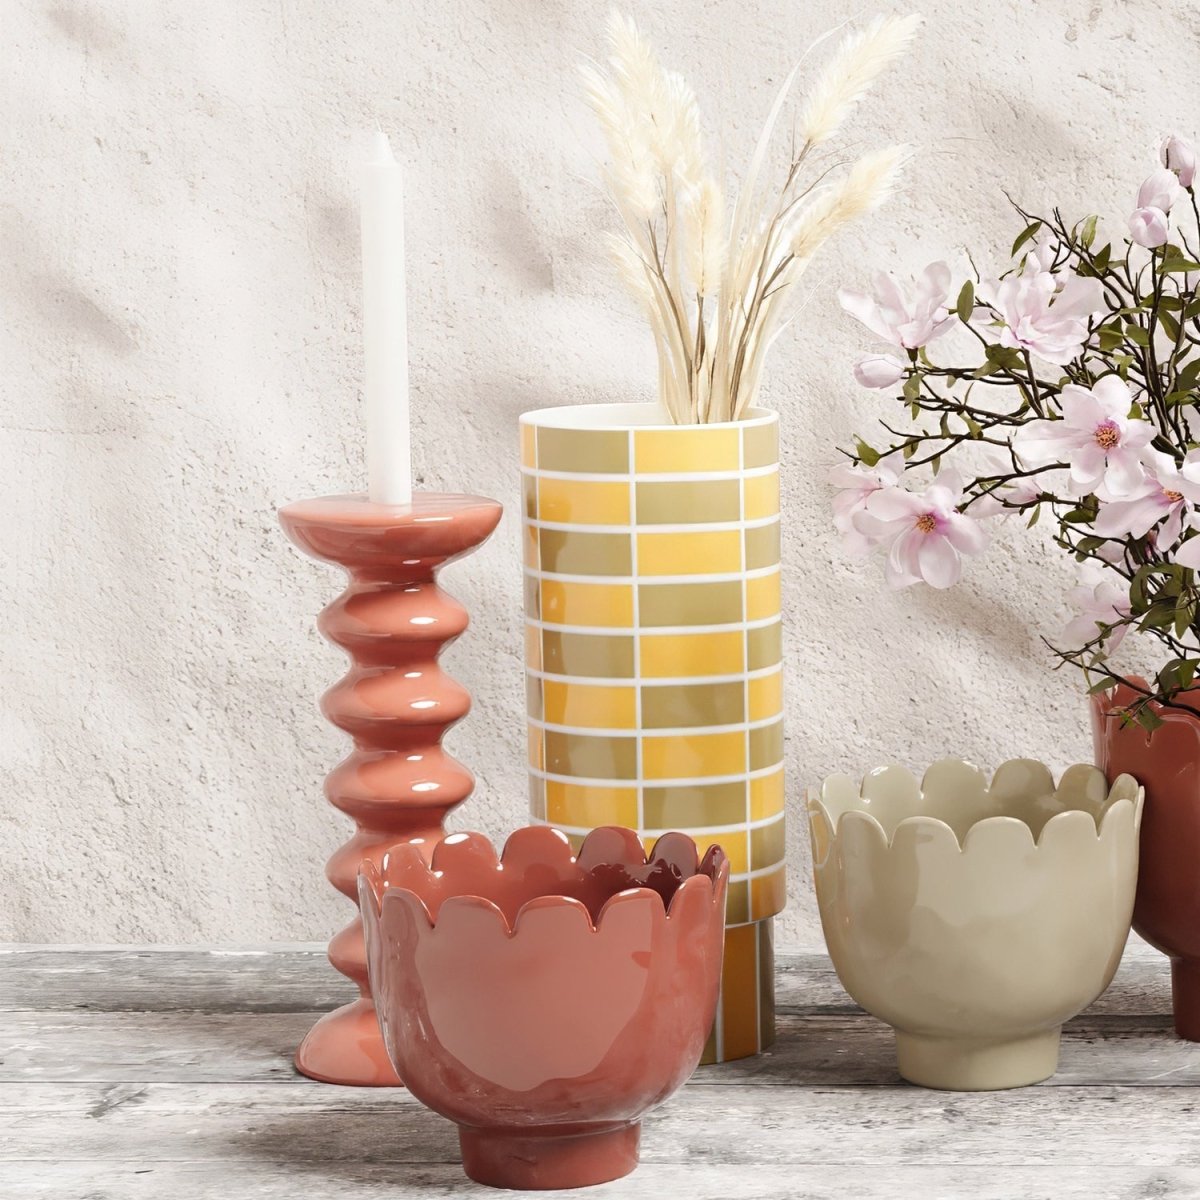 Il suffit d'associer plusieurs vases, cache-pots design et bougeoirs ou chandeliers vintage pour créer une atmosphère séduisante et vous sentir bien chez vous